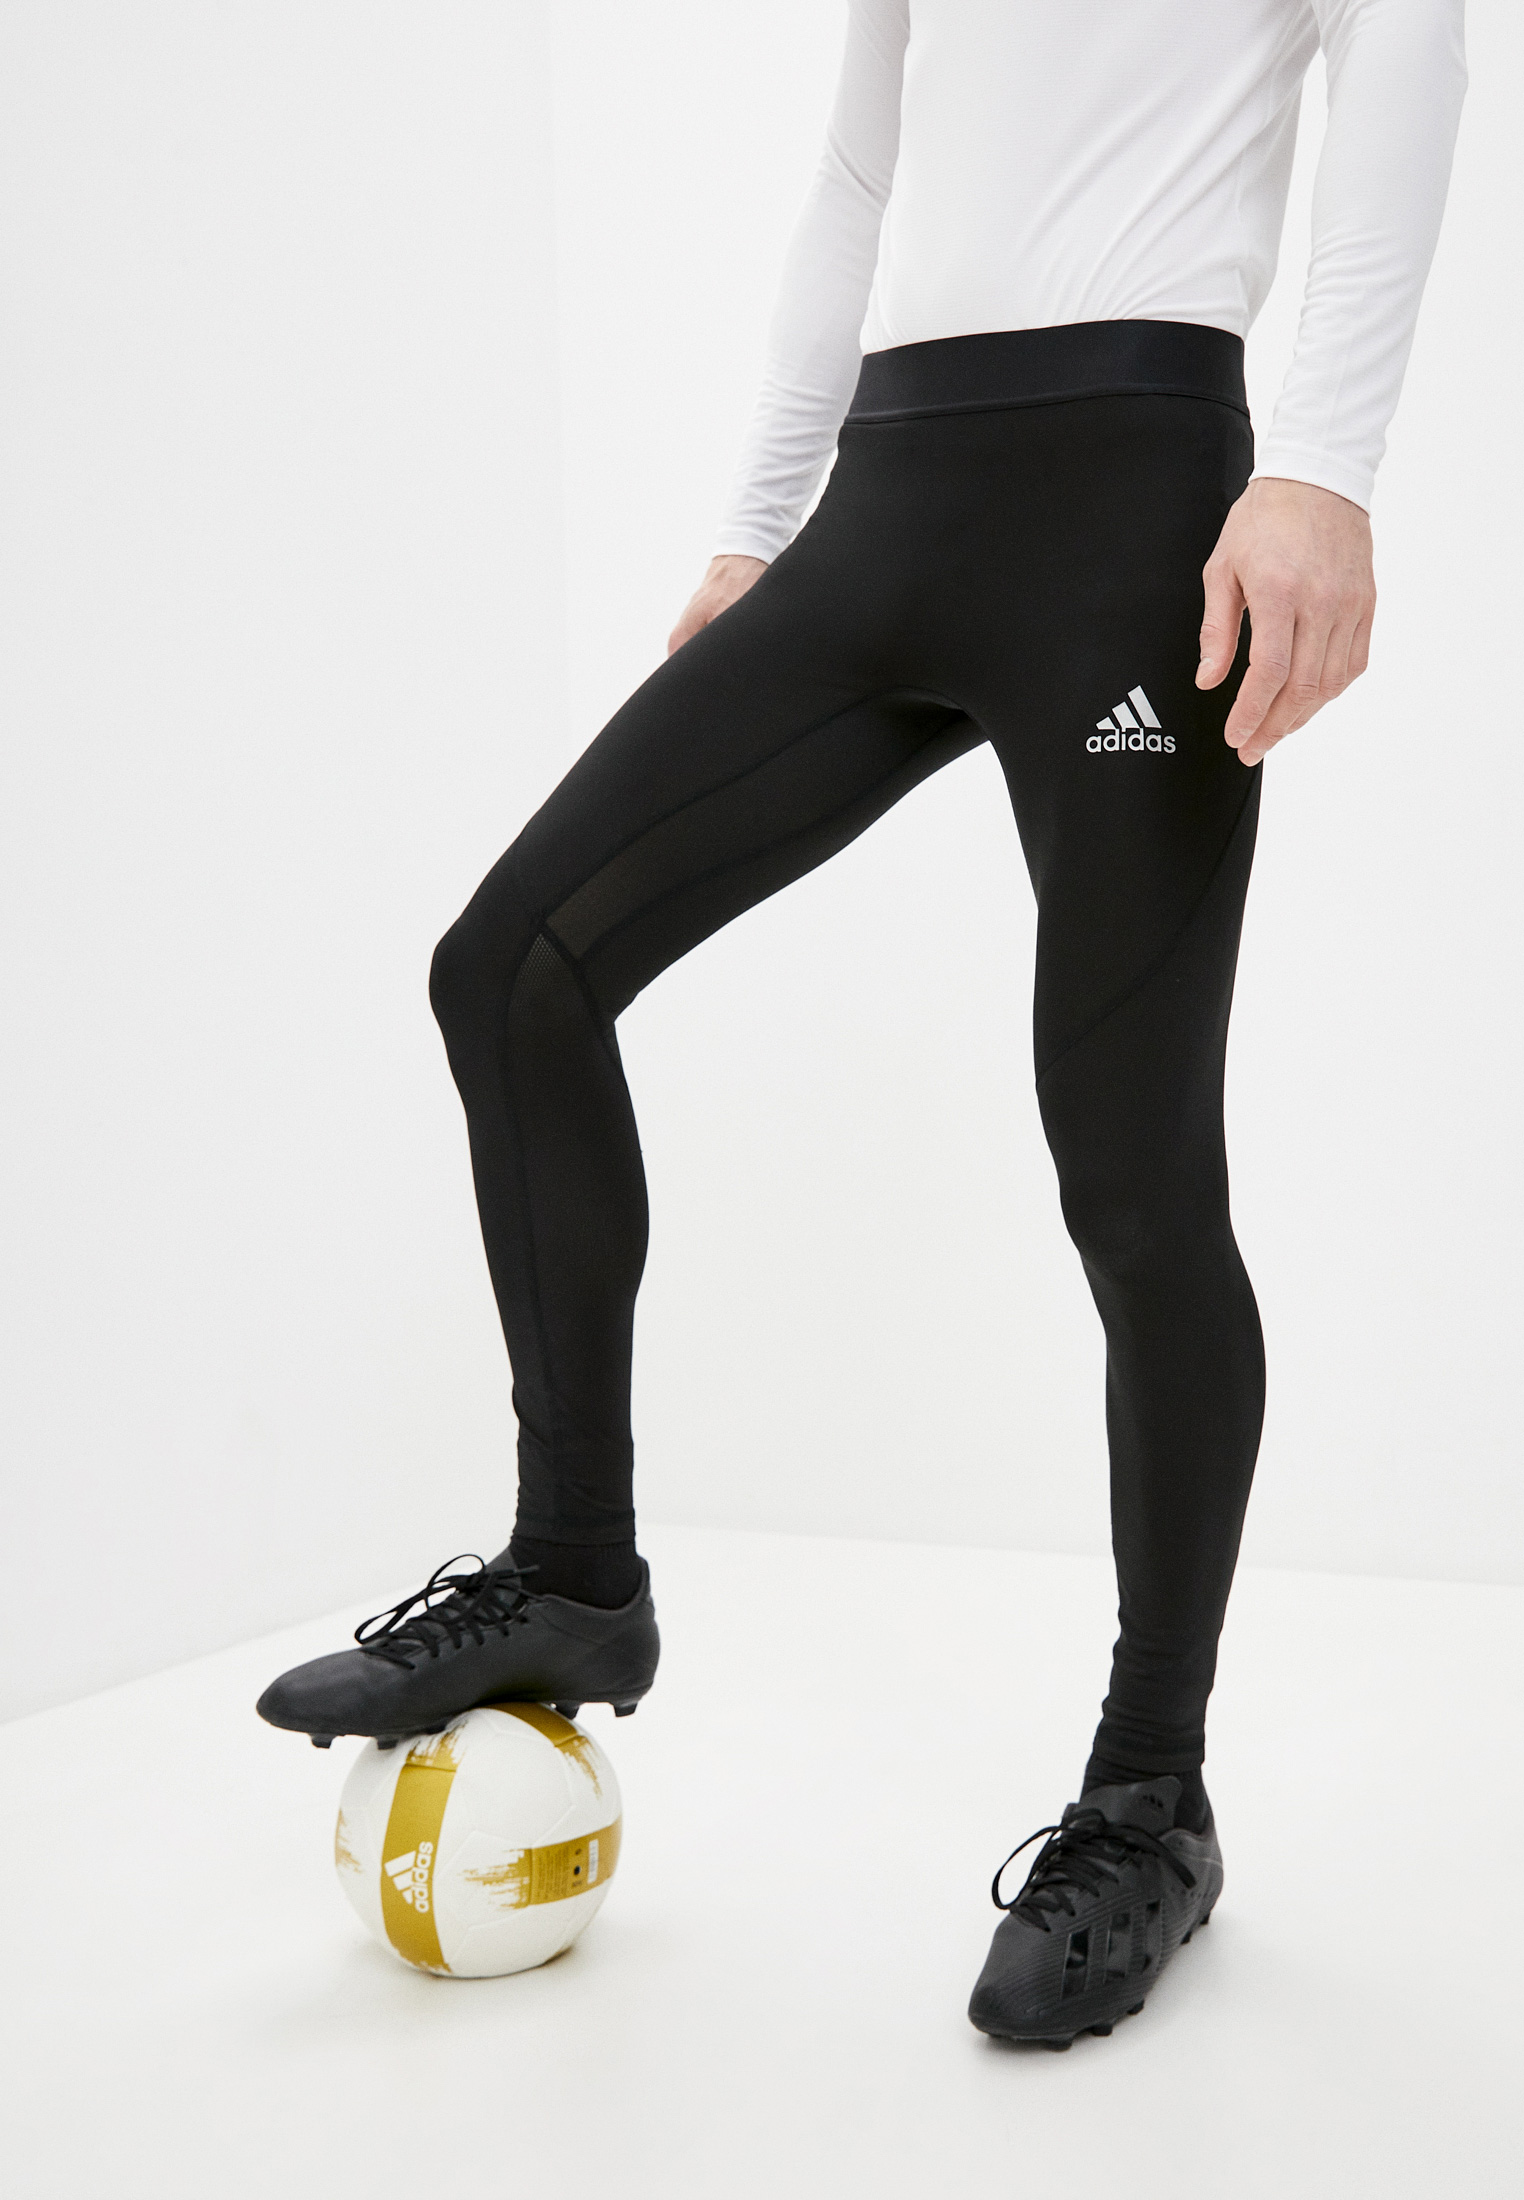 Мужские спортивные брюки Adidas (Адидас) CW9427 купить за 2210 руб.